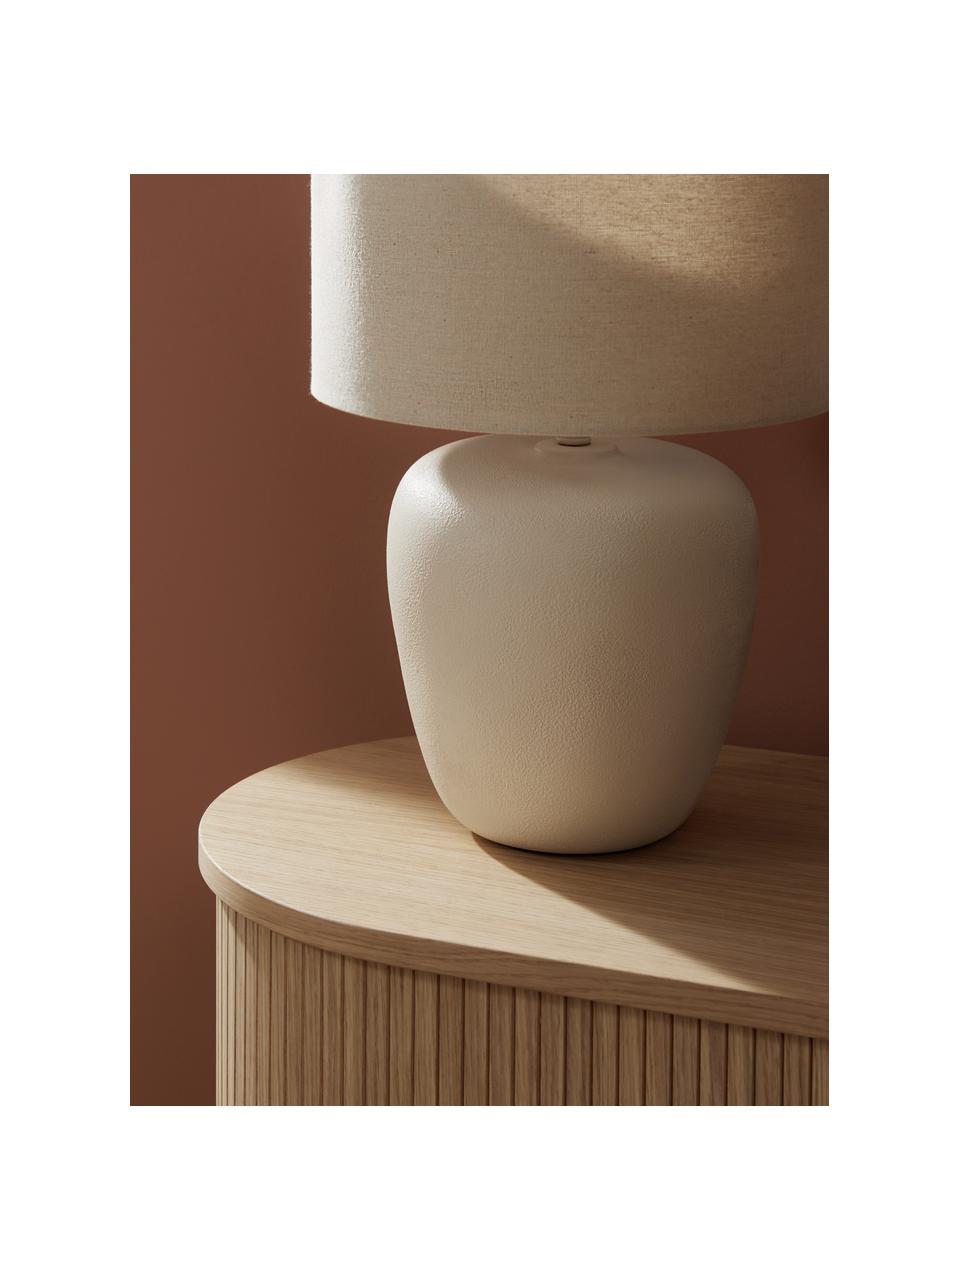 Lámpara de mesa grande de cerámica Eileen, Pantalla: lino (100% poliéster), Cable: cubierto en tela, Beige, Ø 33 x Al 48 cm